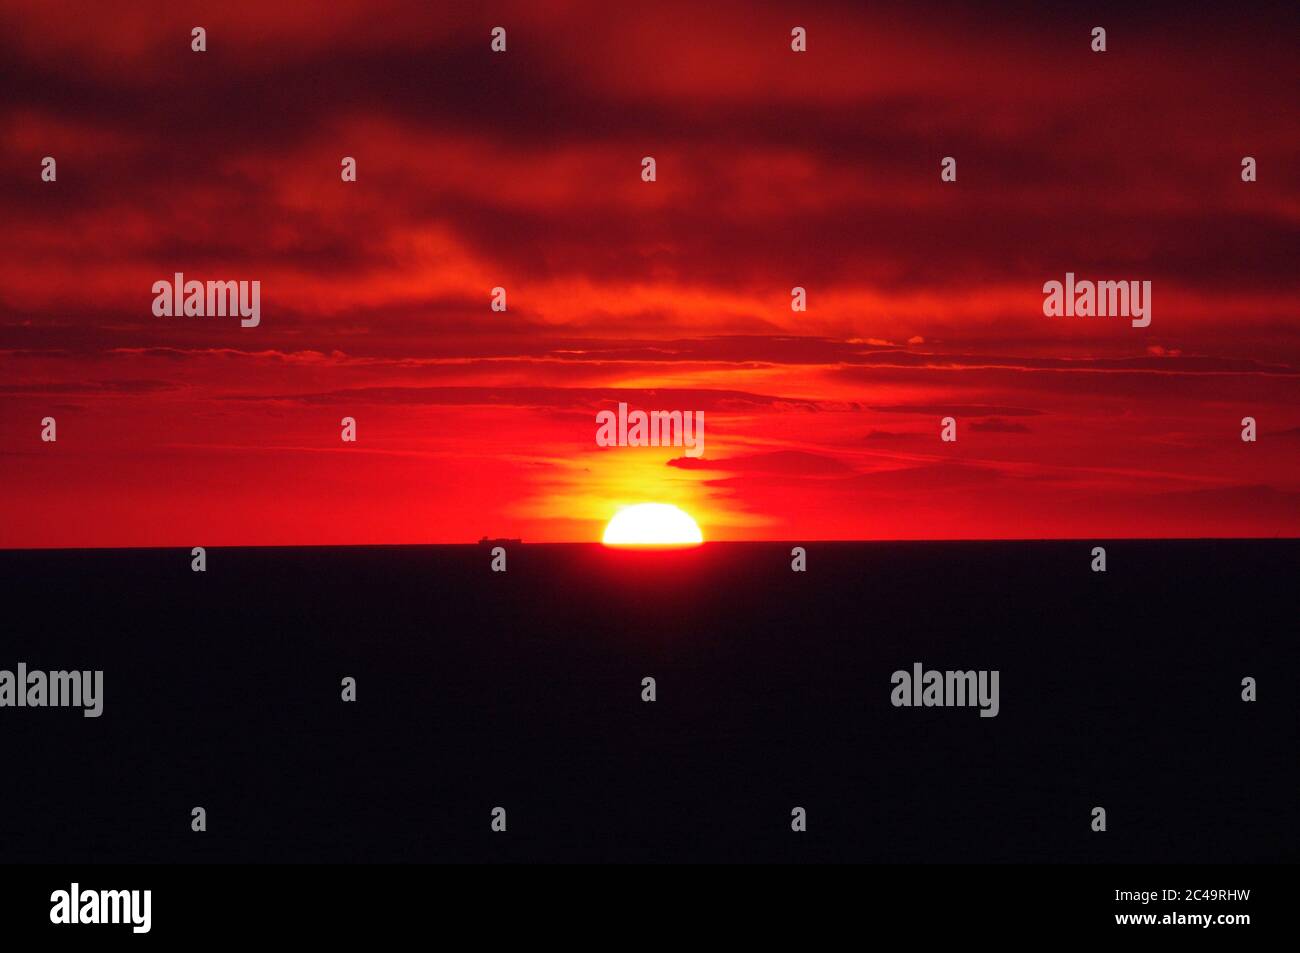 Séquence d'images d'un coucher de soleil, coucher de soleil rouge vif sur mer sombre avec nuages sombres Banque D'Images